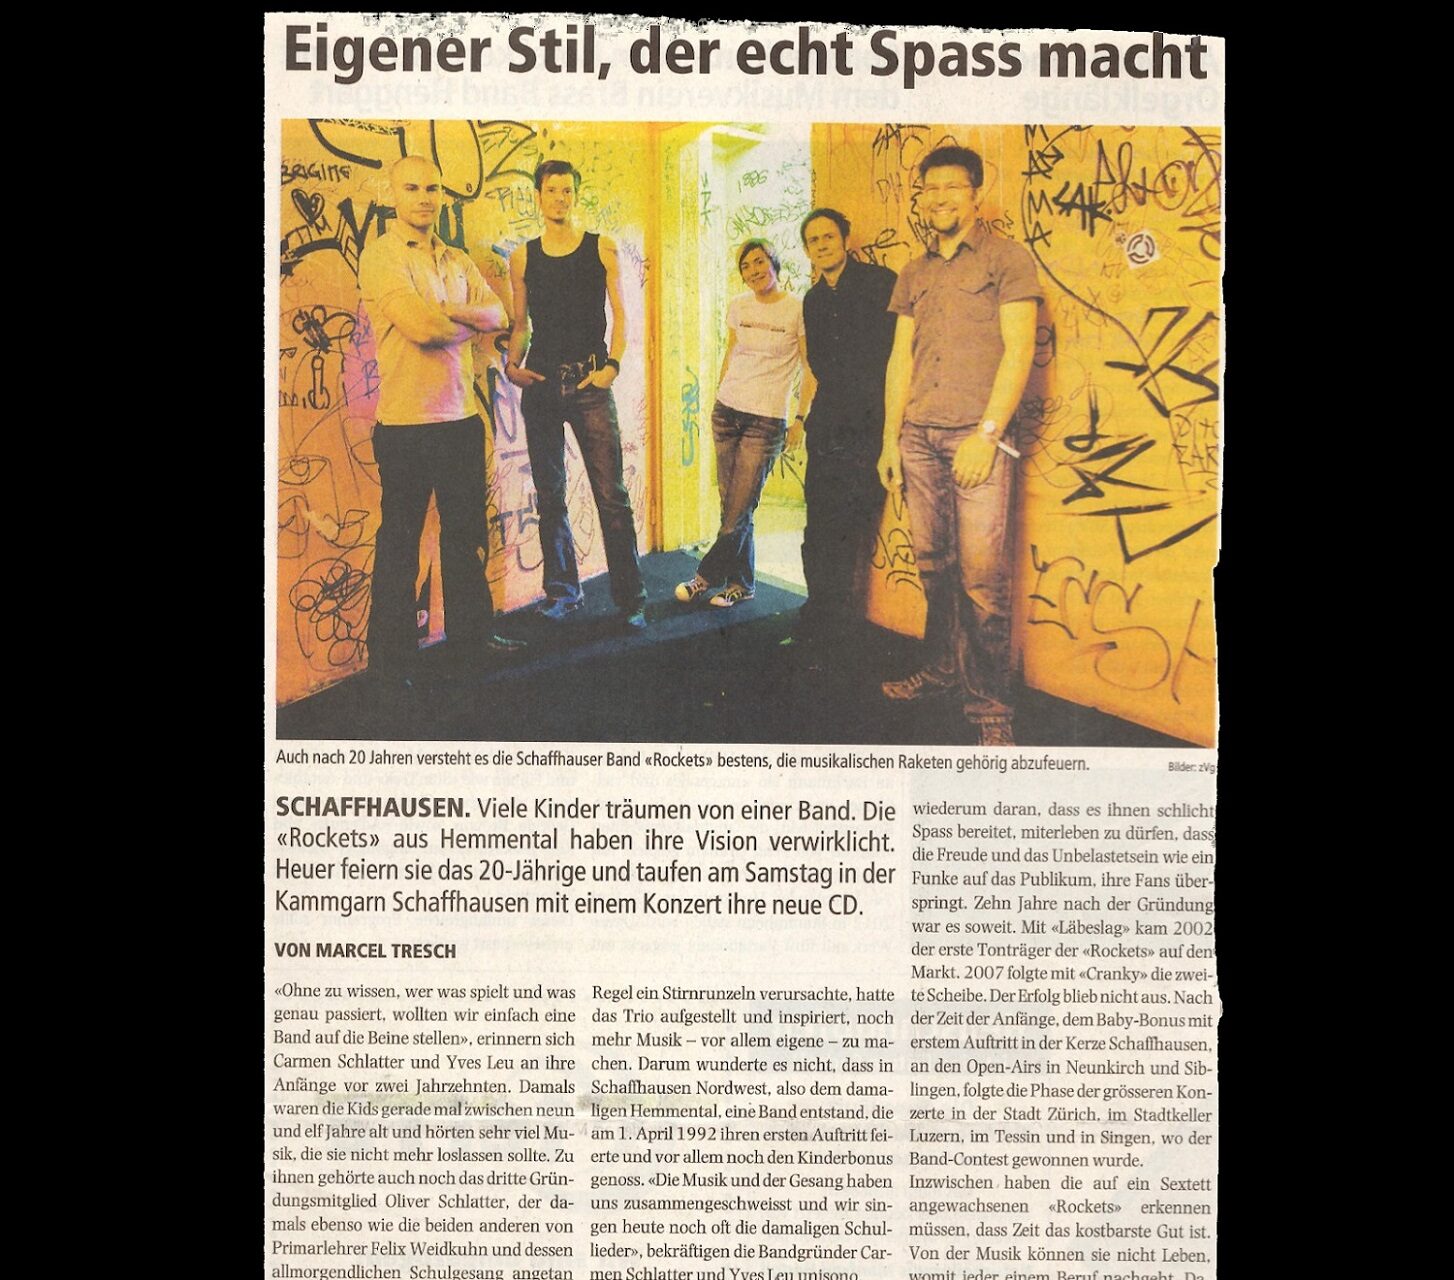 Rockets Taufen Ihre Single "Music" im Escherwyssplatz in Zürich (Exil) - www.exil.cl